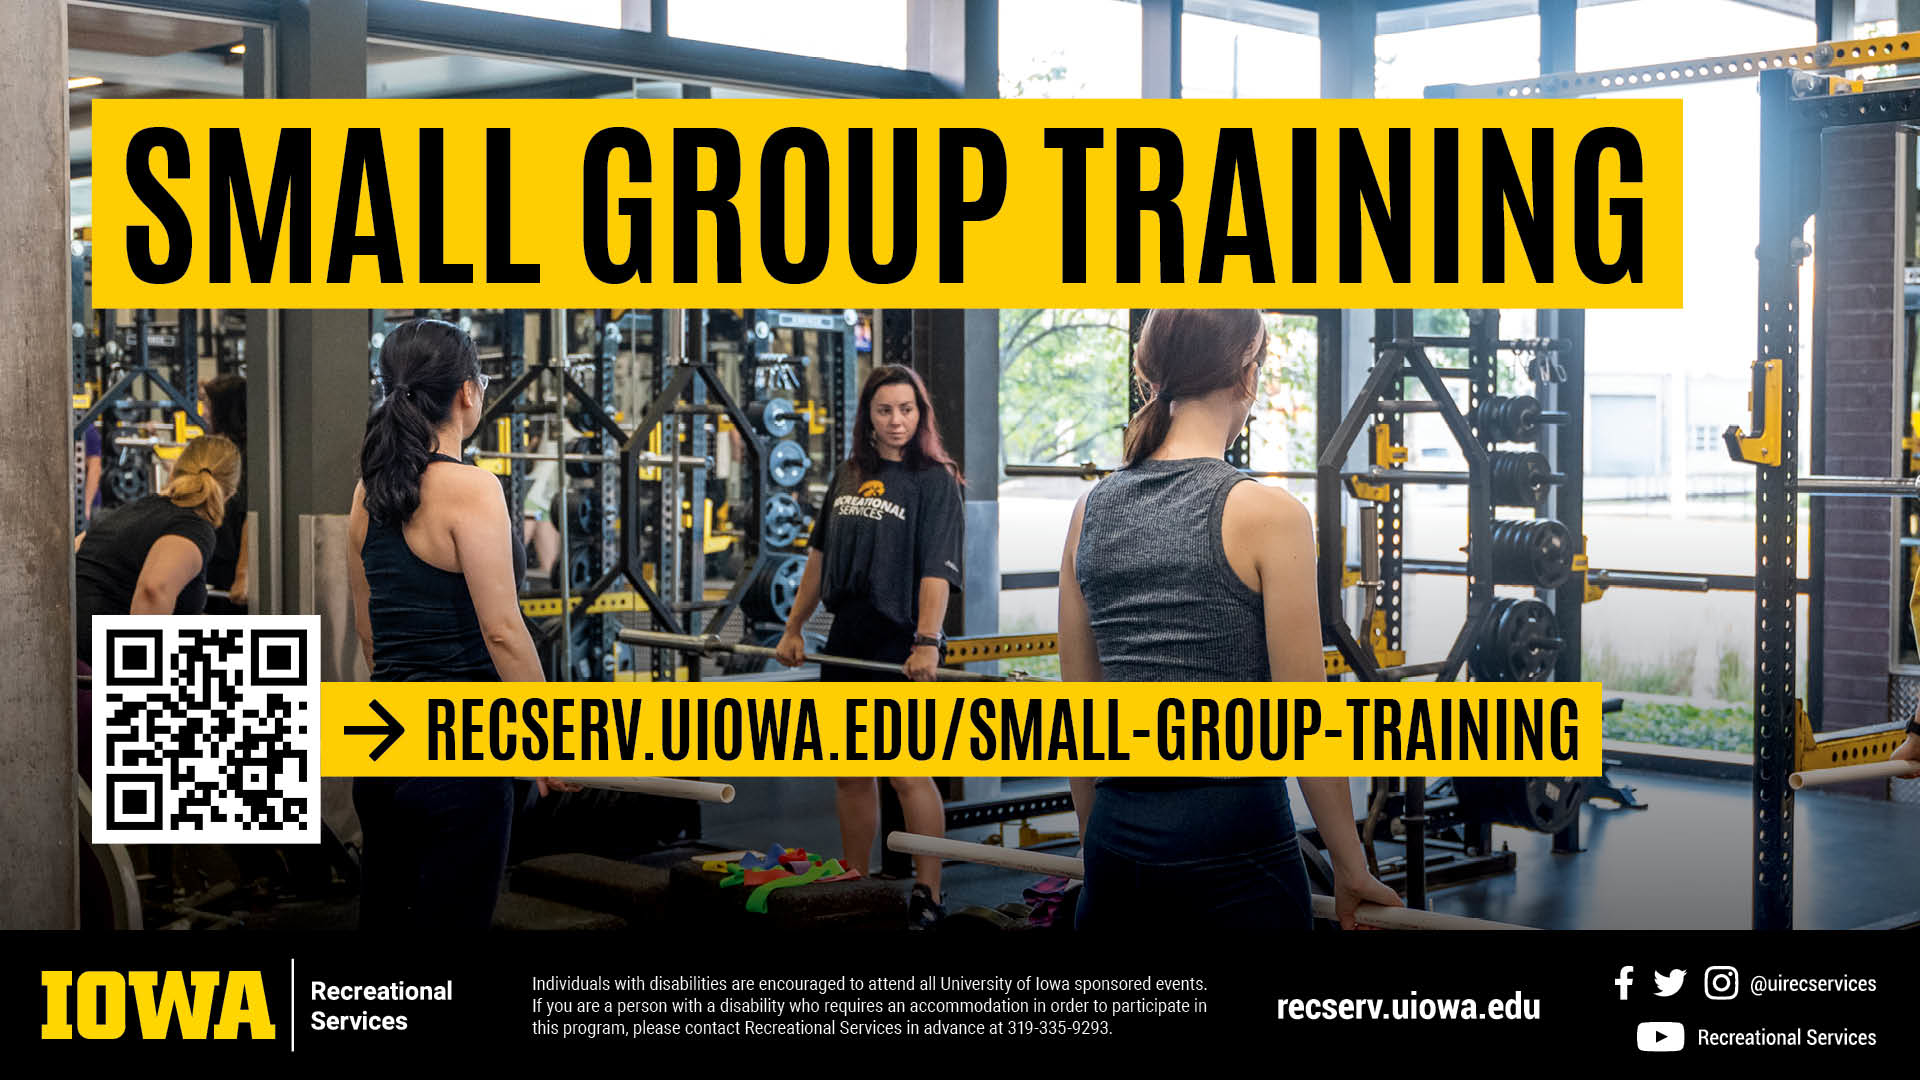 recserv.uiowa.edu/small-group-training